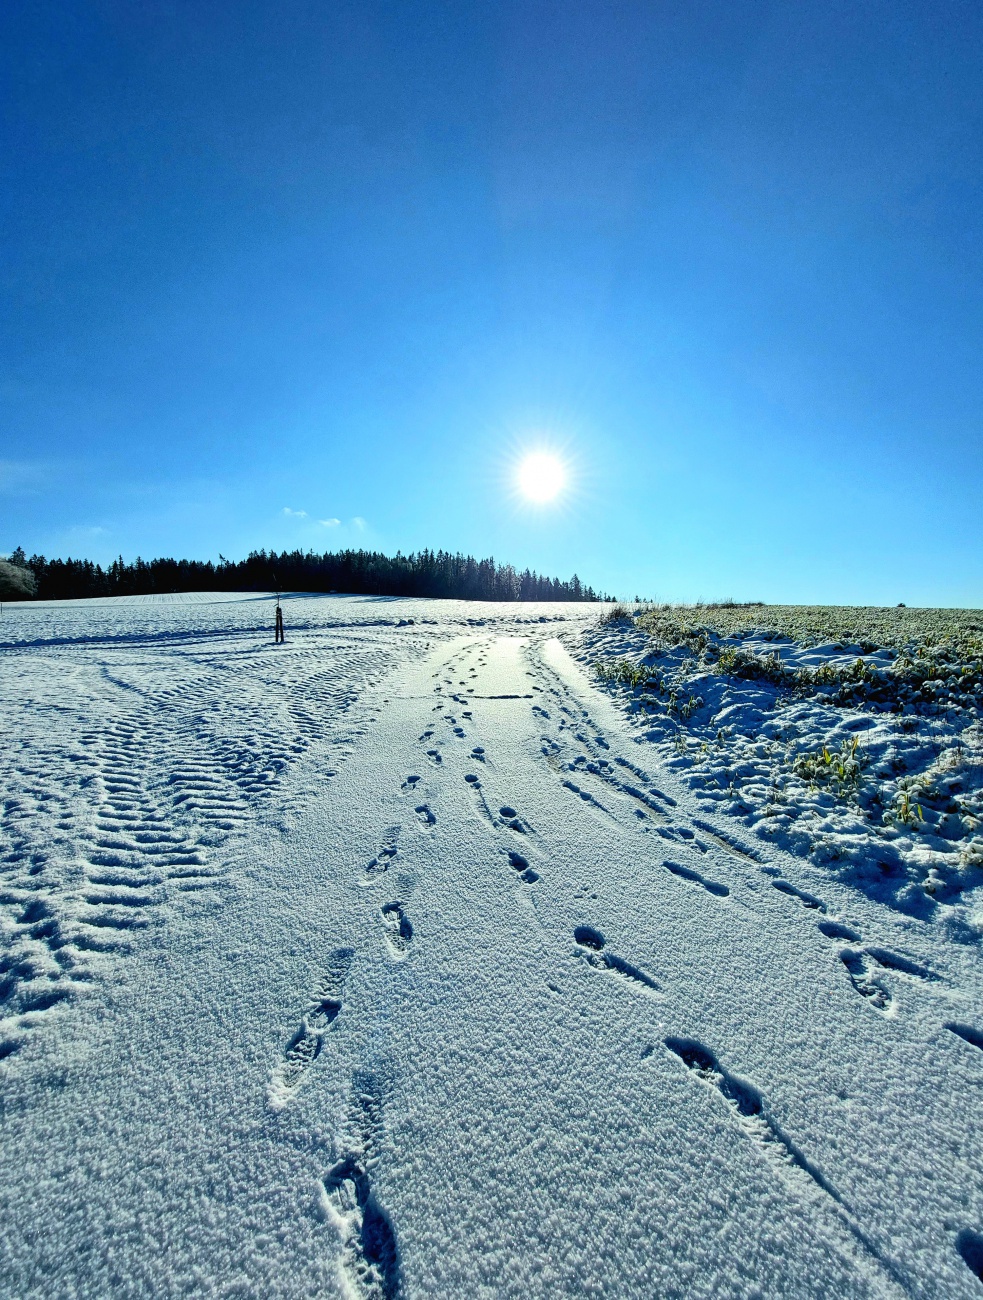 Foto: Martin Zehrer - GODAS - ABSOLUT GIGANTISCH!!!<br />
<br />
Endlich wieder ein herrlich sonniger Winter-Tag. <br />
Bei -5 Grad Kälte strahlte die Sonne wirklich voller Energie vom blauen Himmel. 